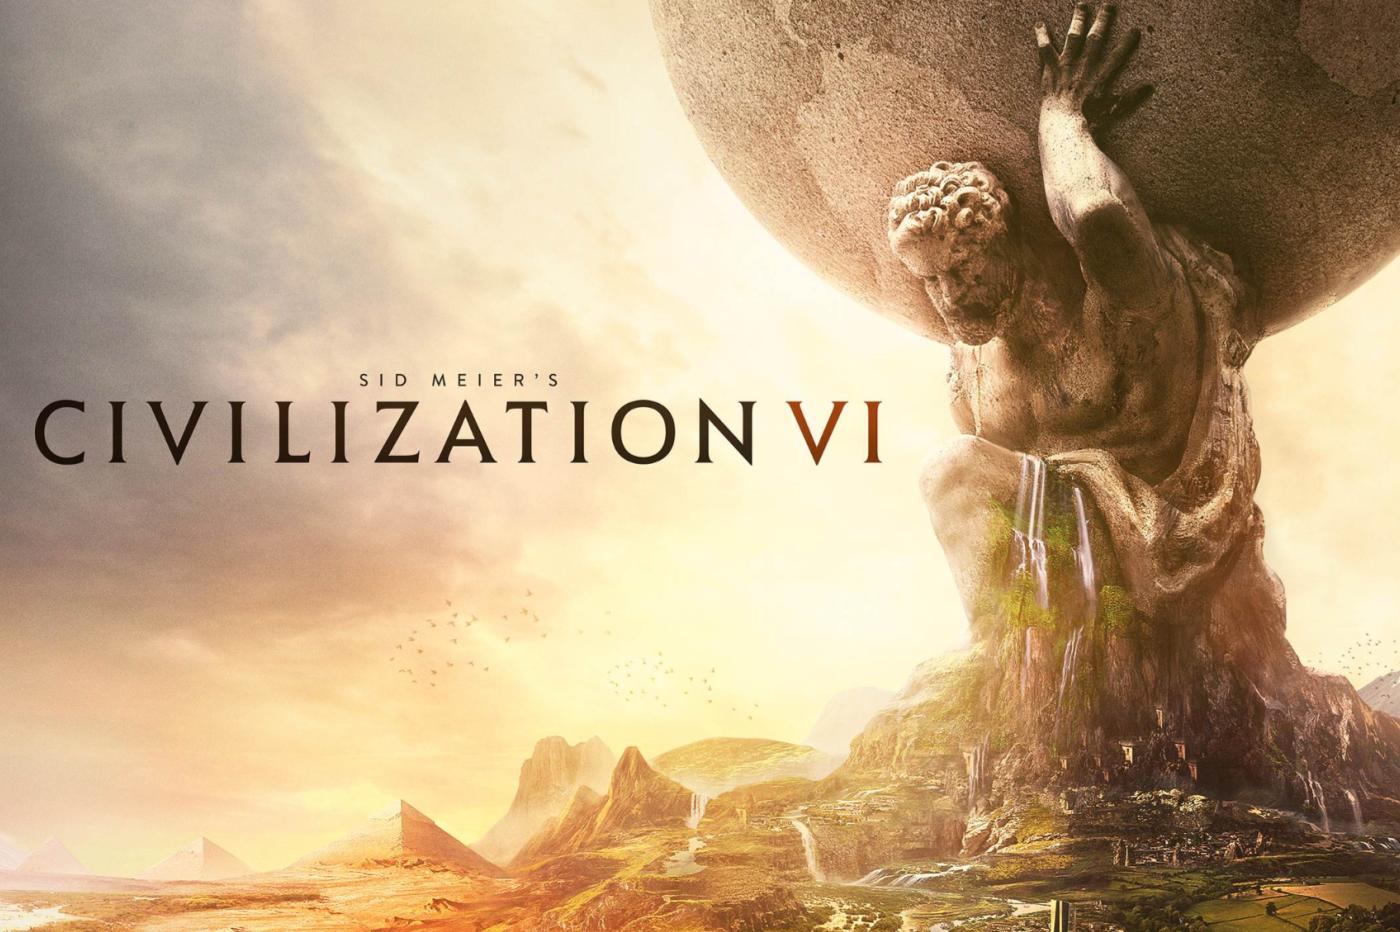 civilization 6, le dernier opus de la franchise à ce jour